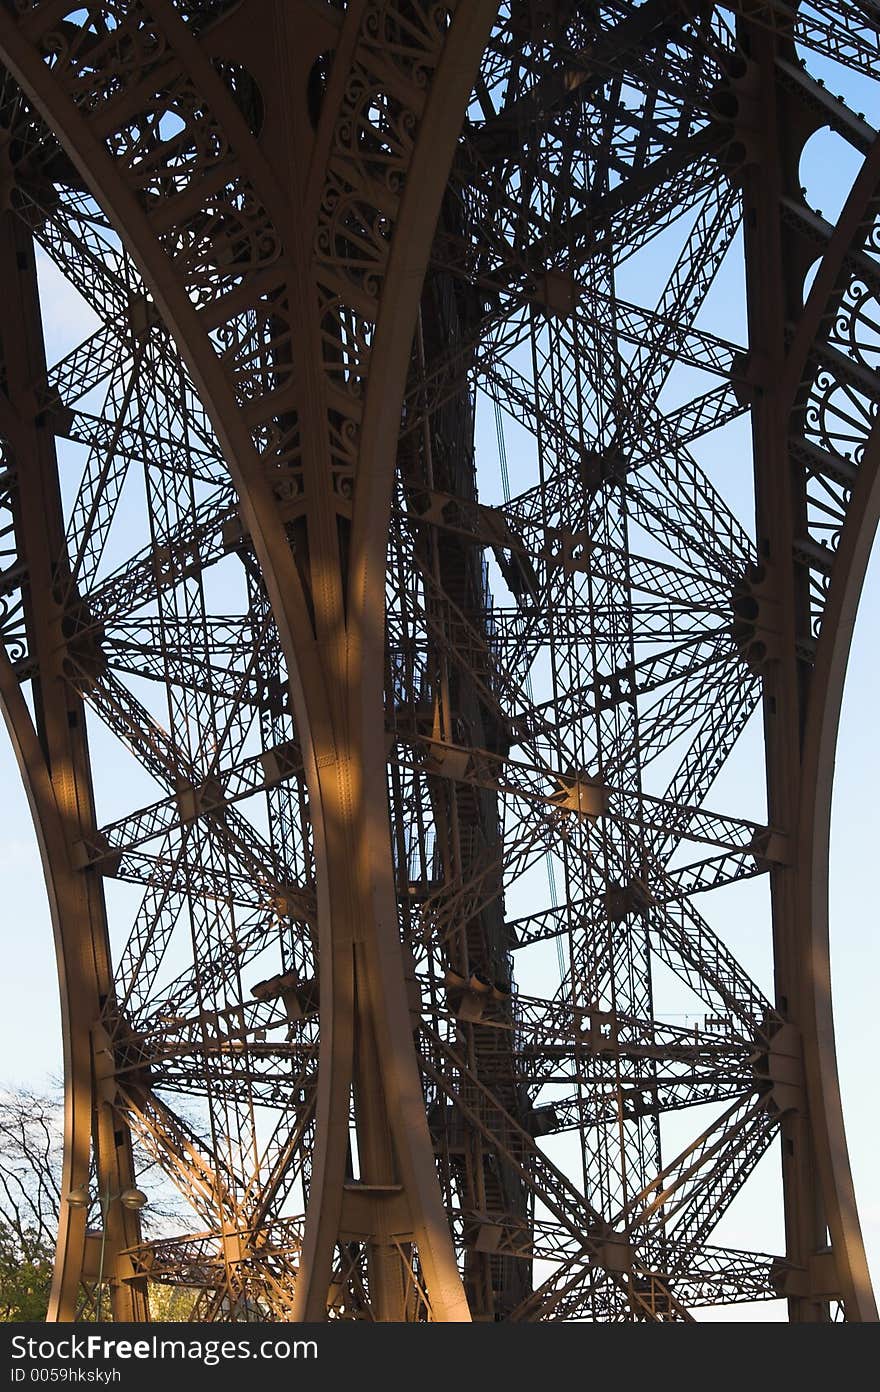 Eiffel tower pier details, Paris, France